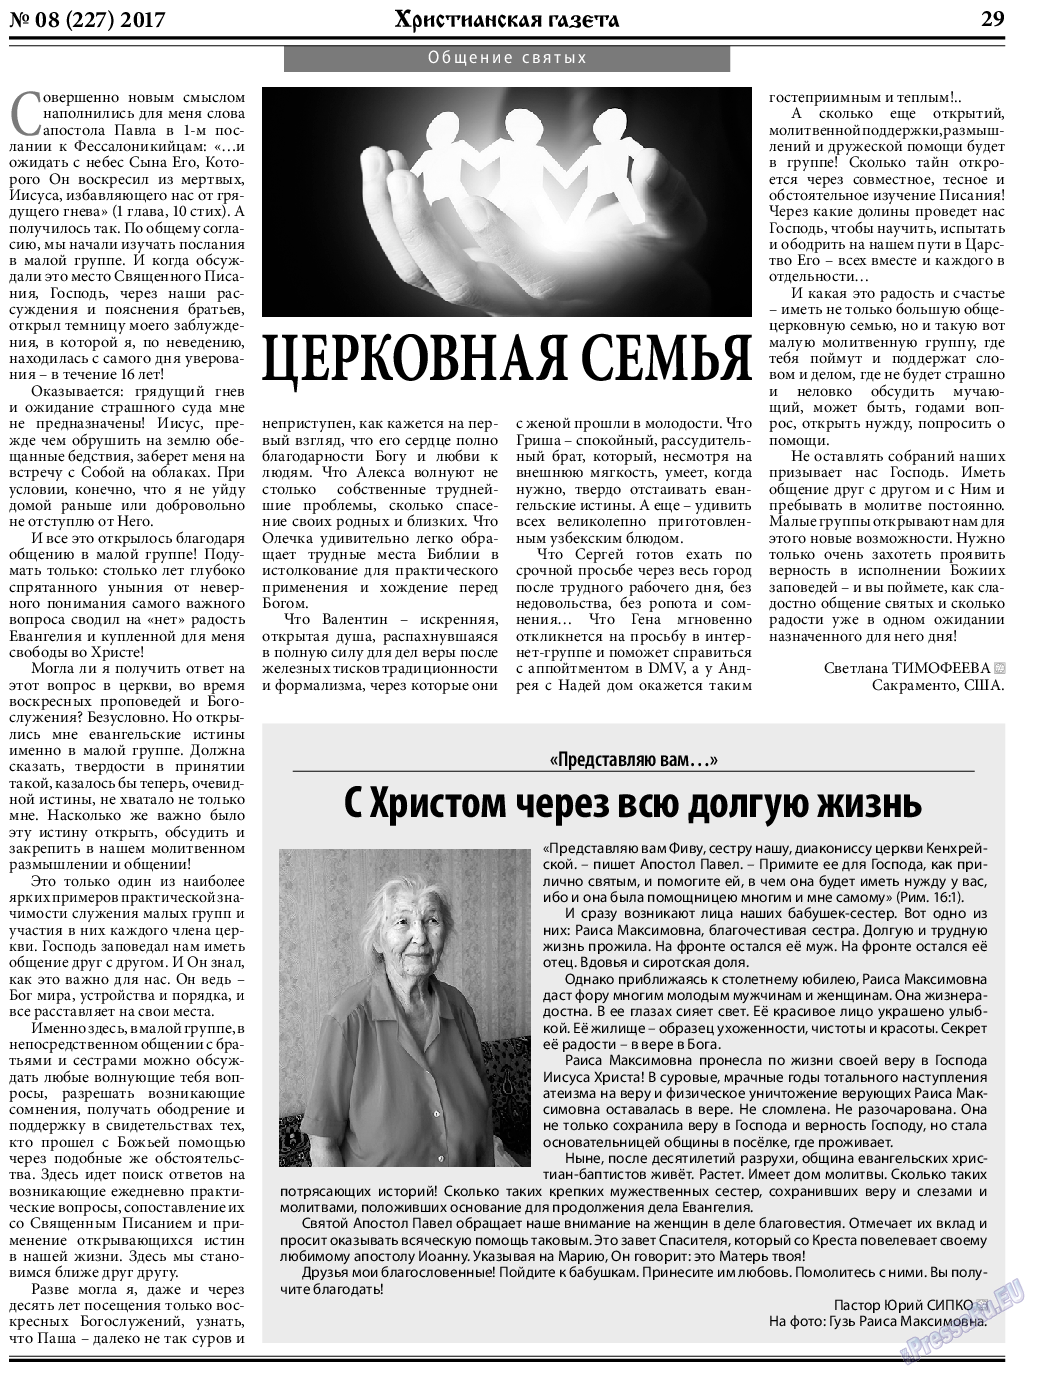 Христианская газета, газета. 2017 №8 стр.29